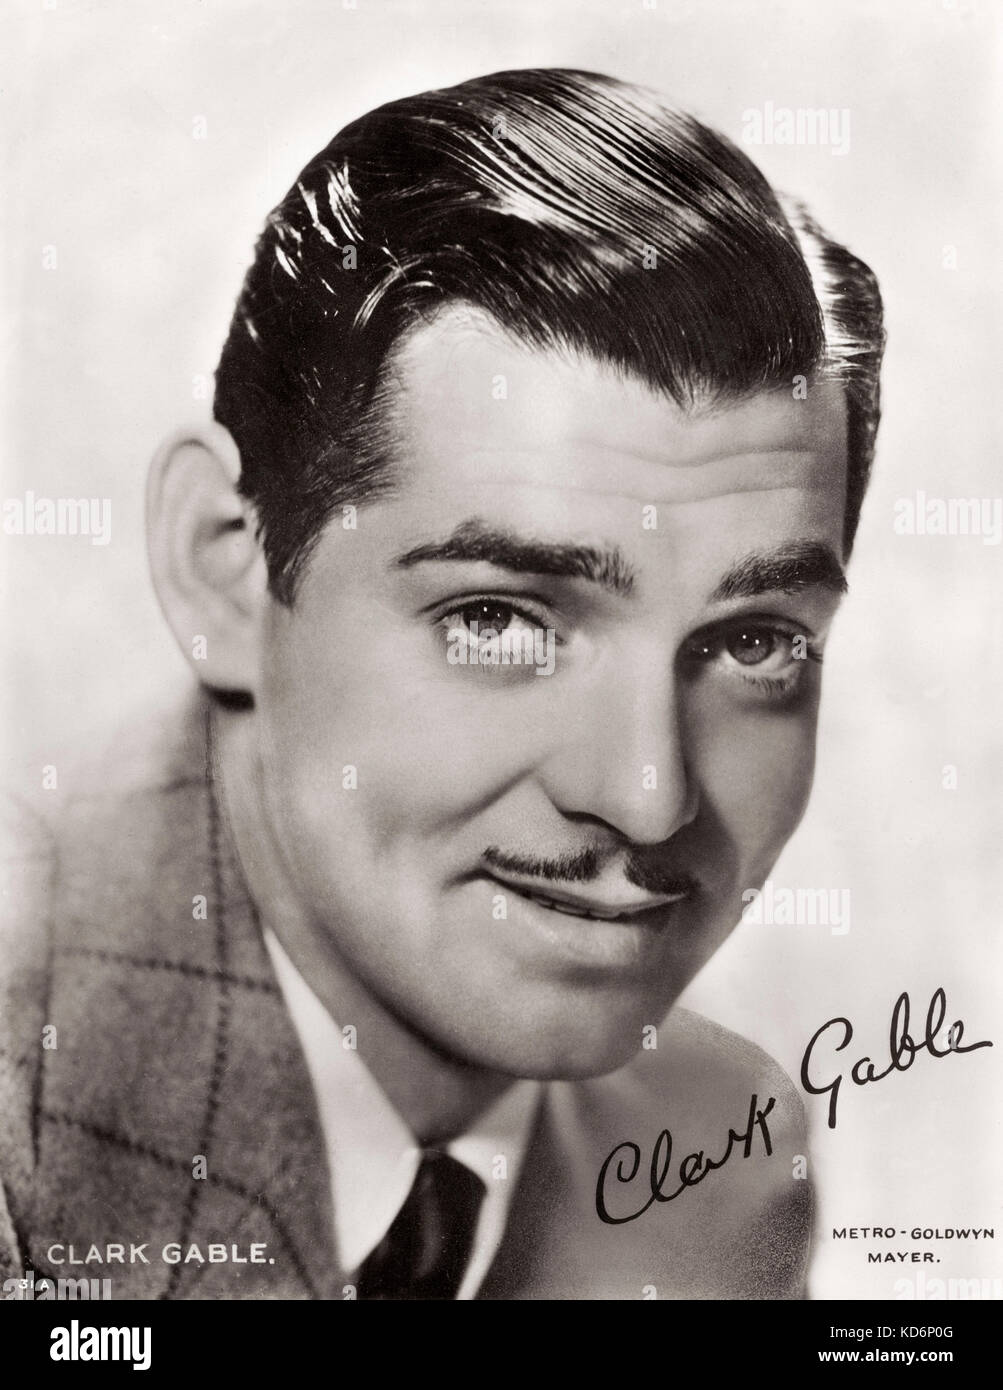 Clark Gable, signé portrait. Acteur de cinéma américain, 2 février 1901 - 16 novembre 1960. Publicité photo. Banque D'Images